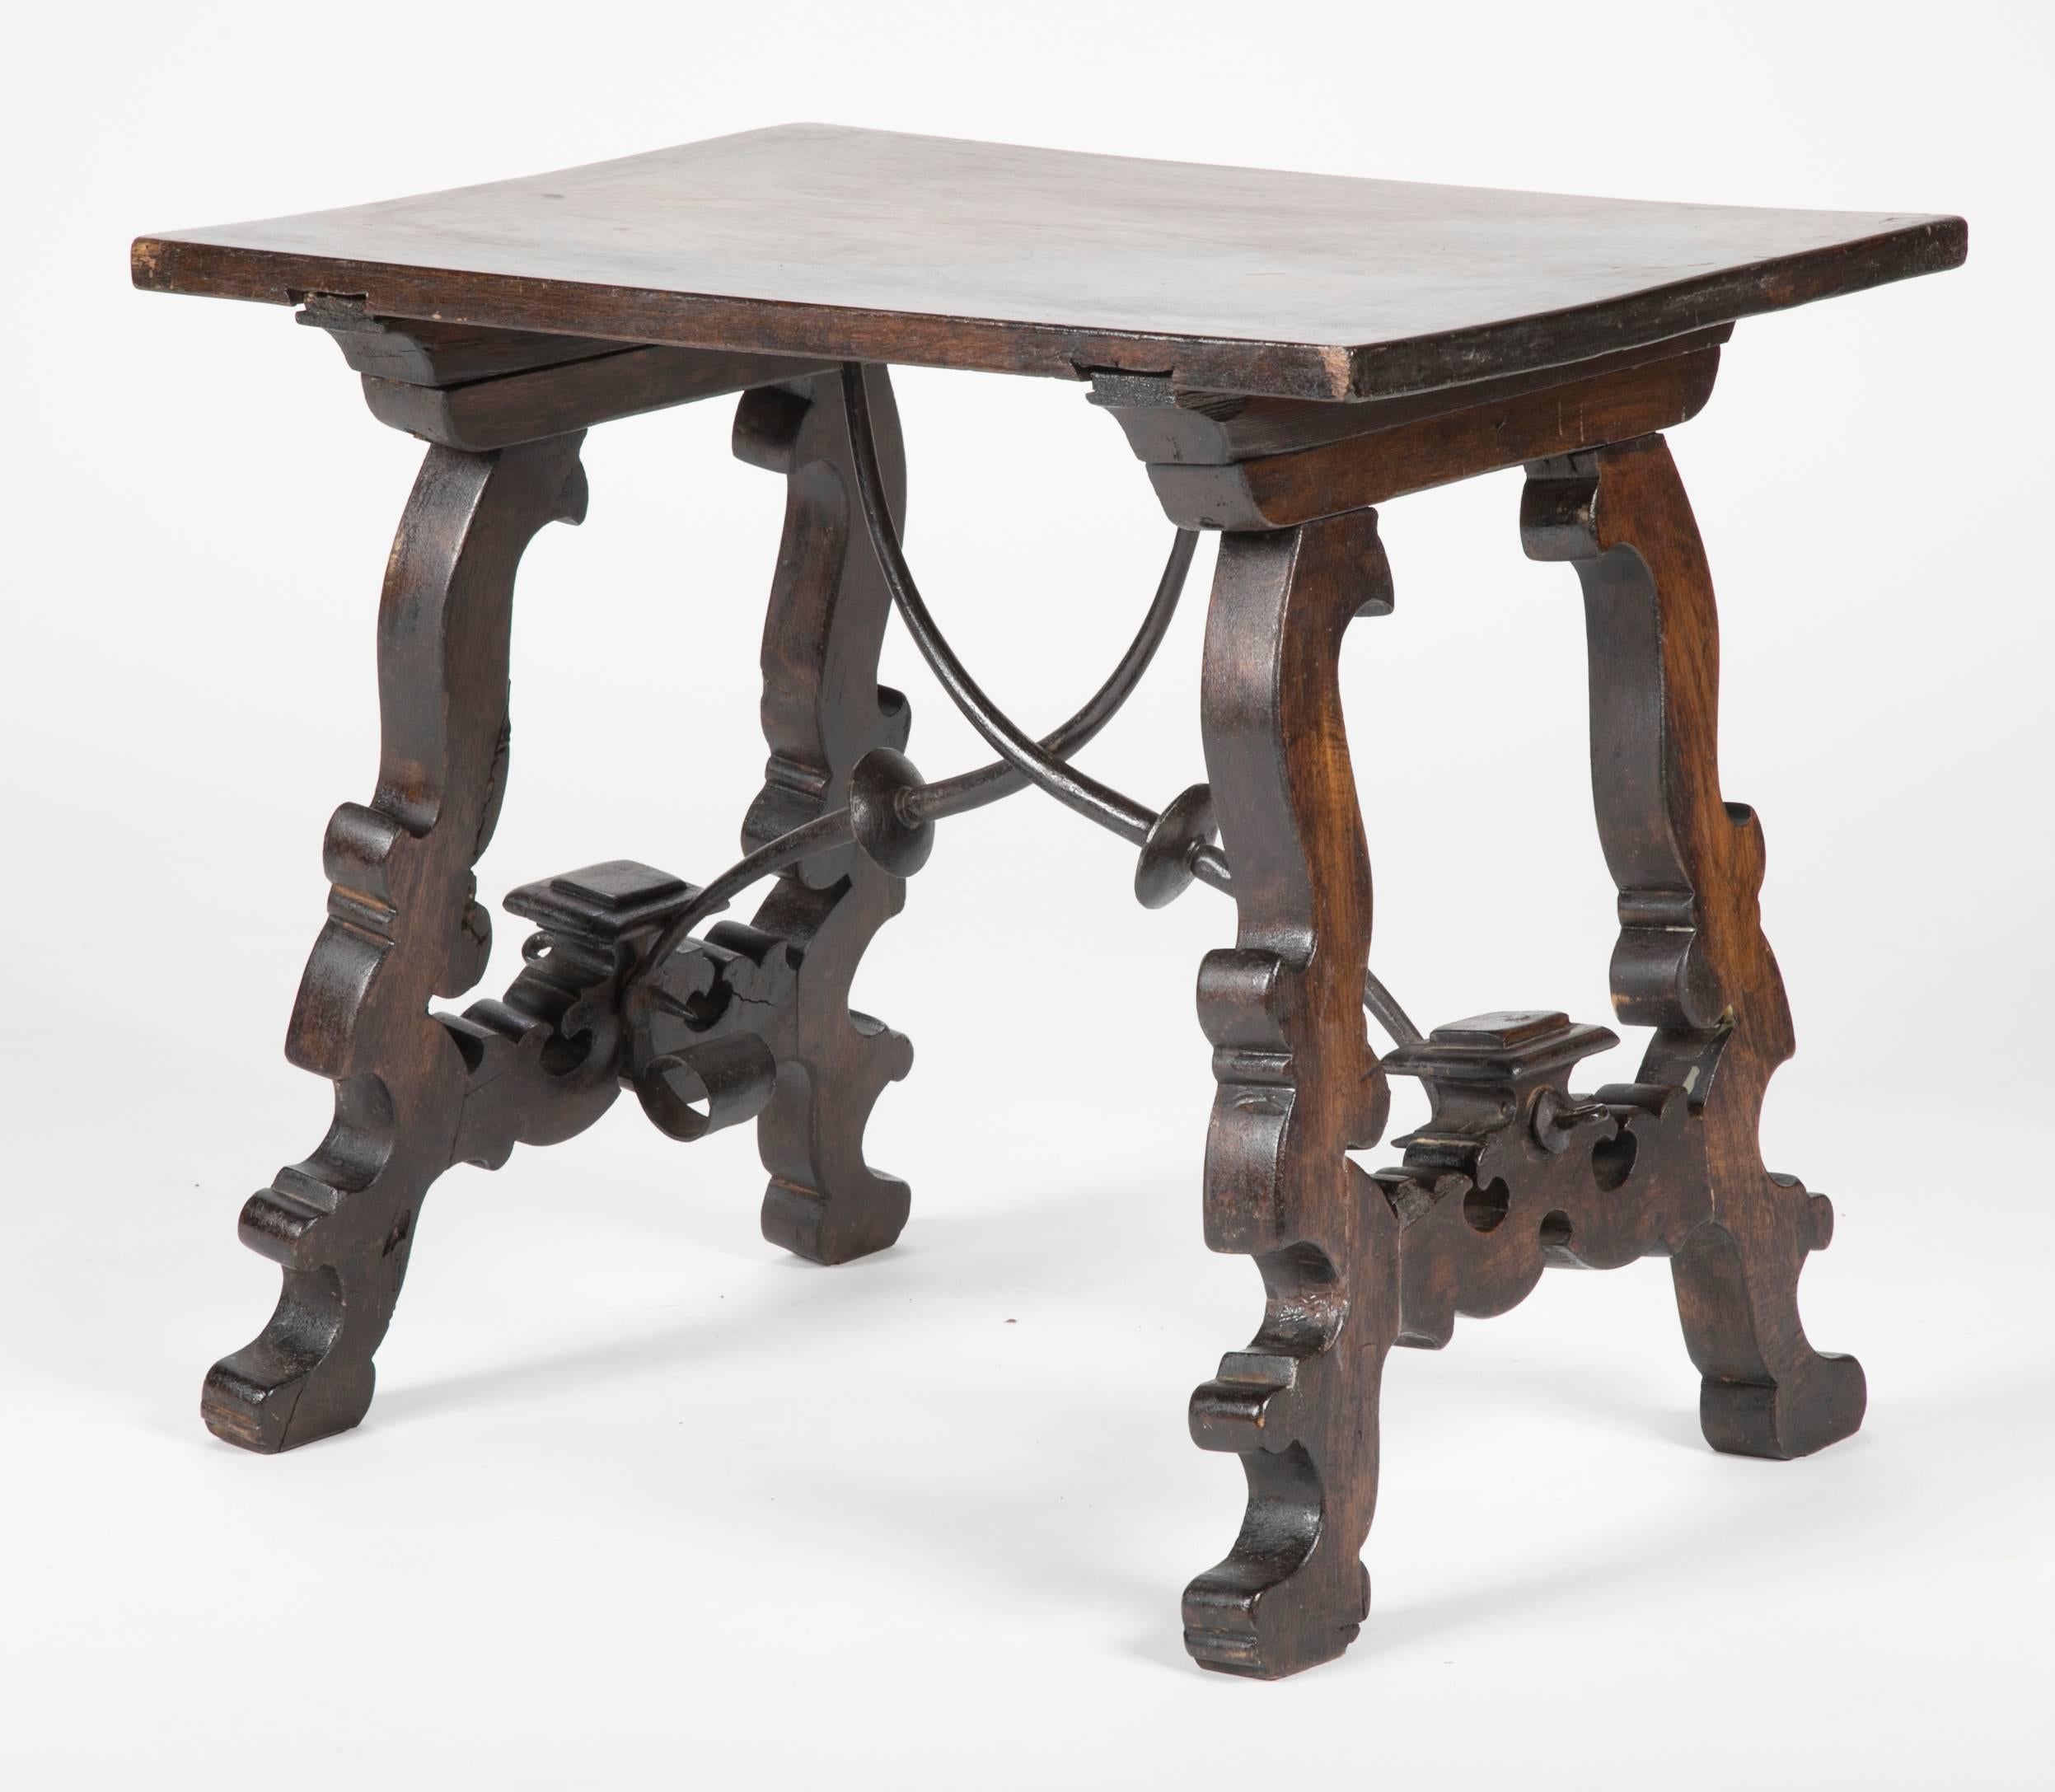 Table d'appoint en noyer de style baroque italien, avec une sculpture exceptionnelle sur les pieds, reliés par des traverses en fer forgé.